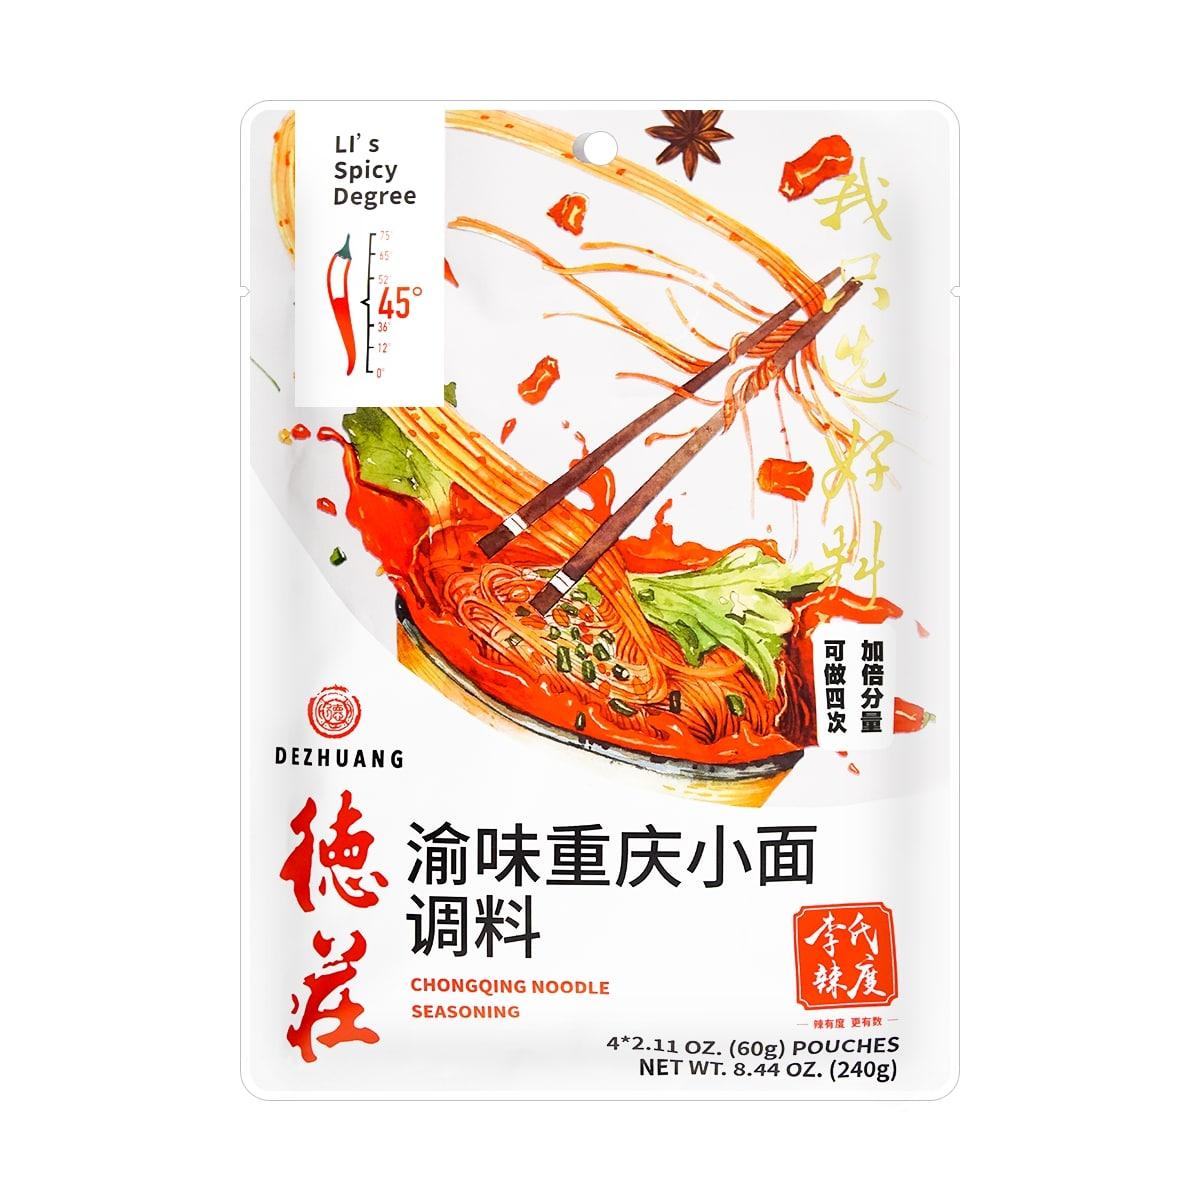 de-zhuang-chong-qing-noodle-seasoning